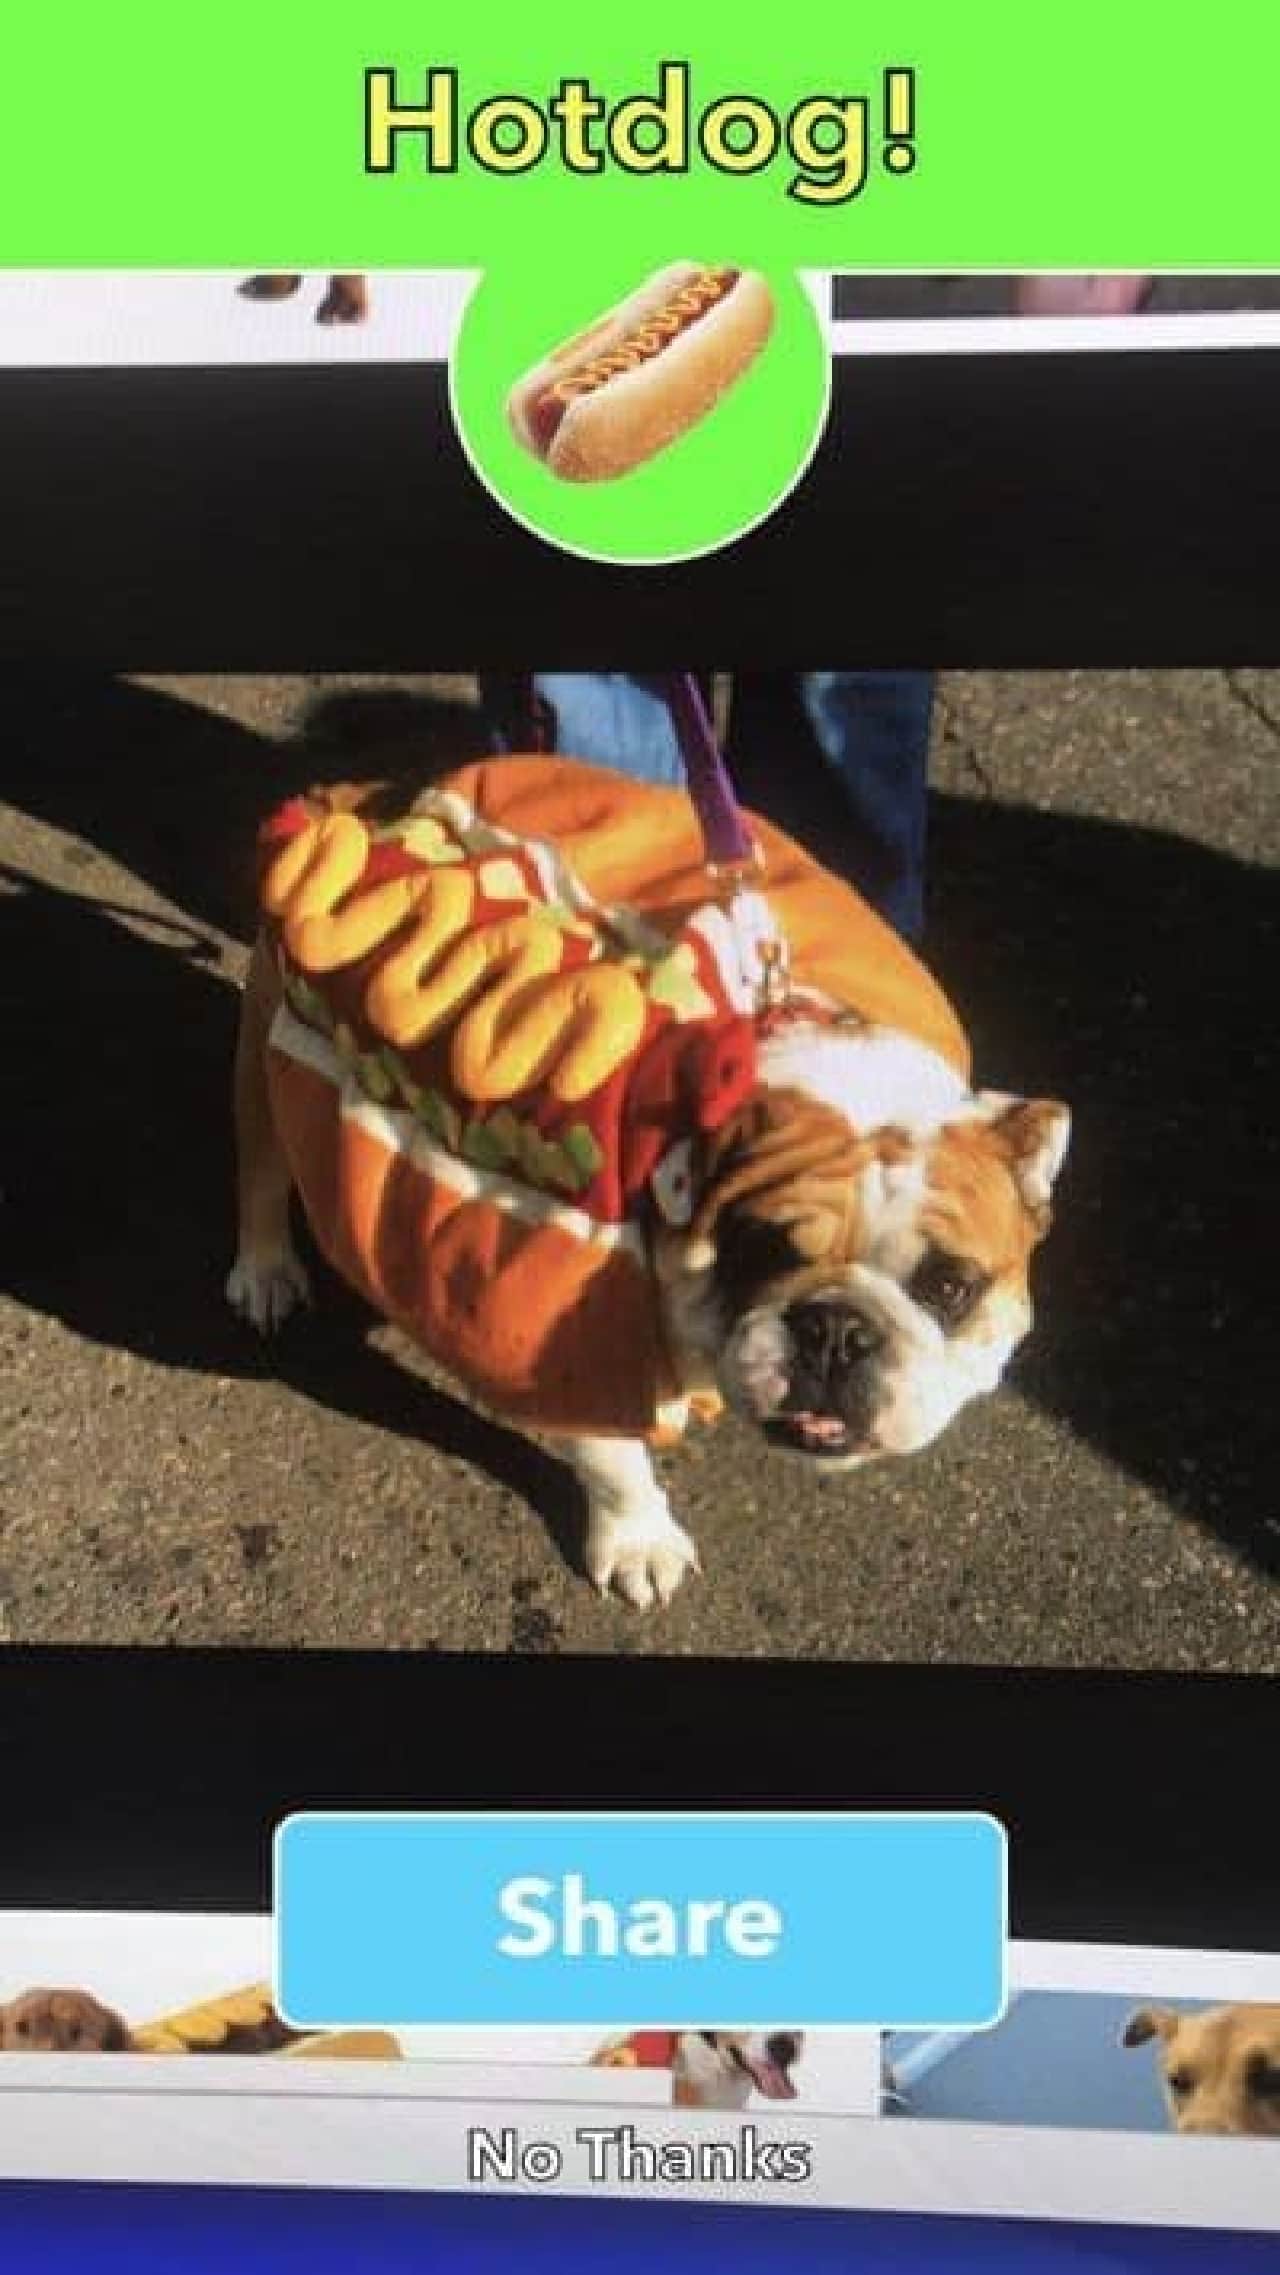 「ホットドッグかそうでないか」を判定できるアプリ「Not Hotdog」